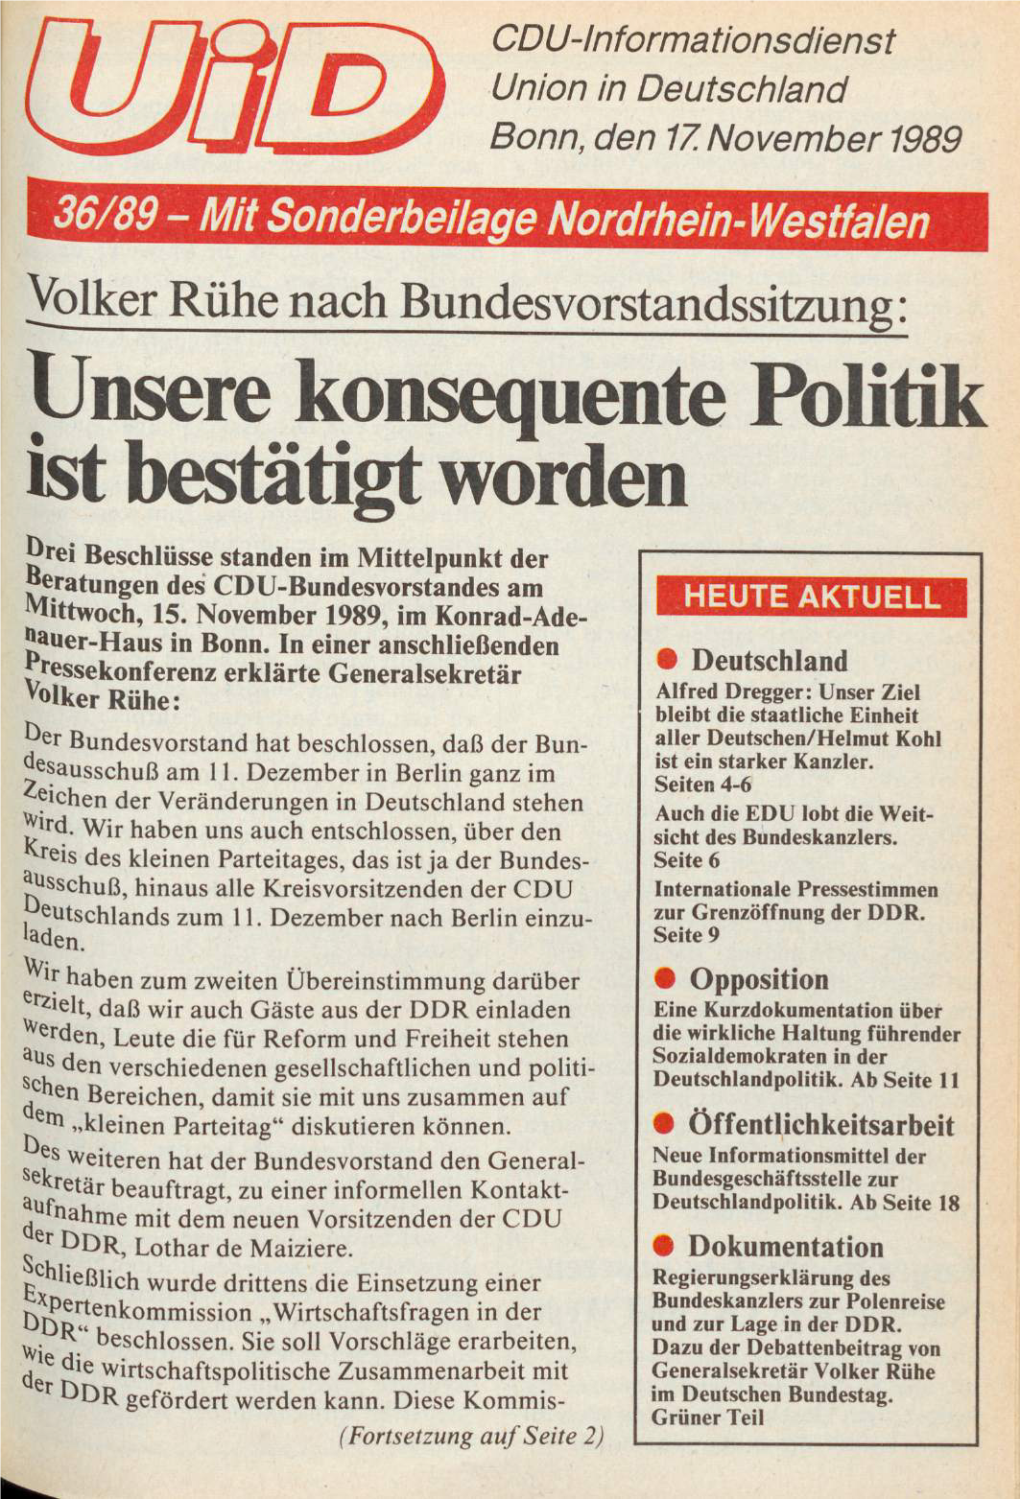 UID 1989 Nr. 36, Union in Deutschland